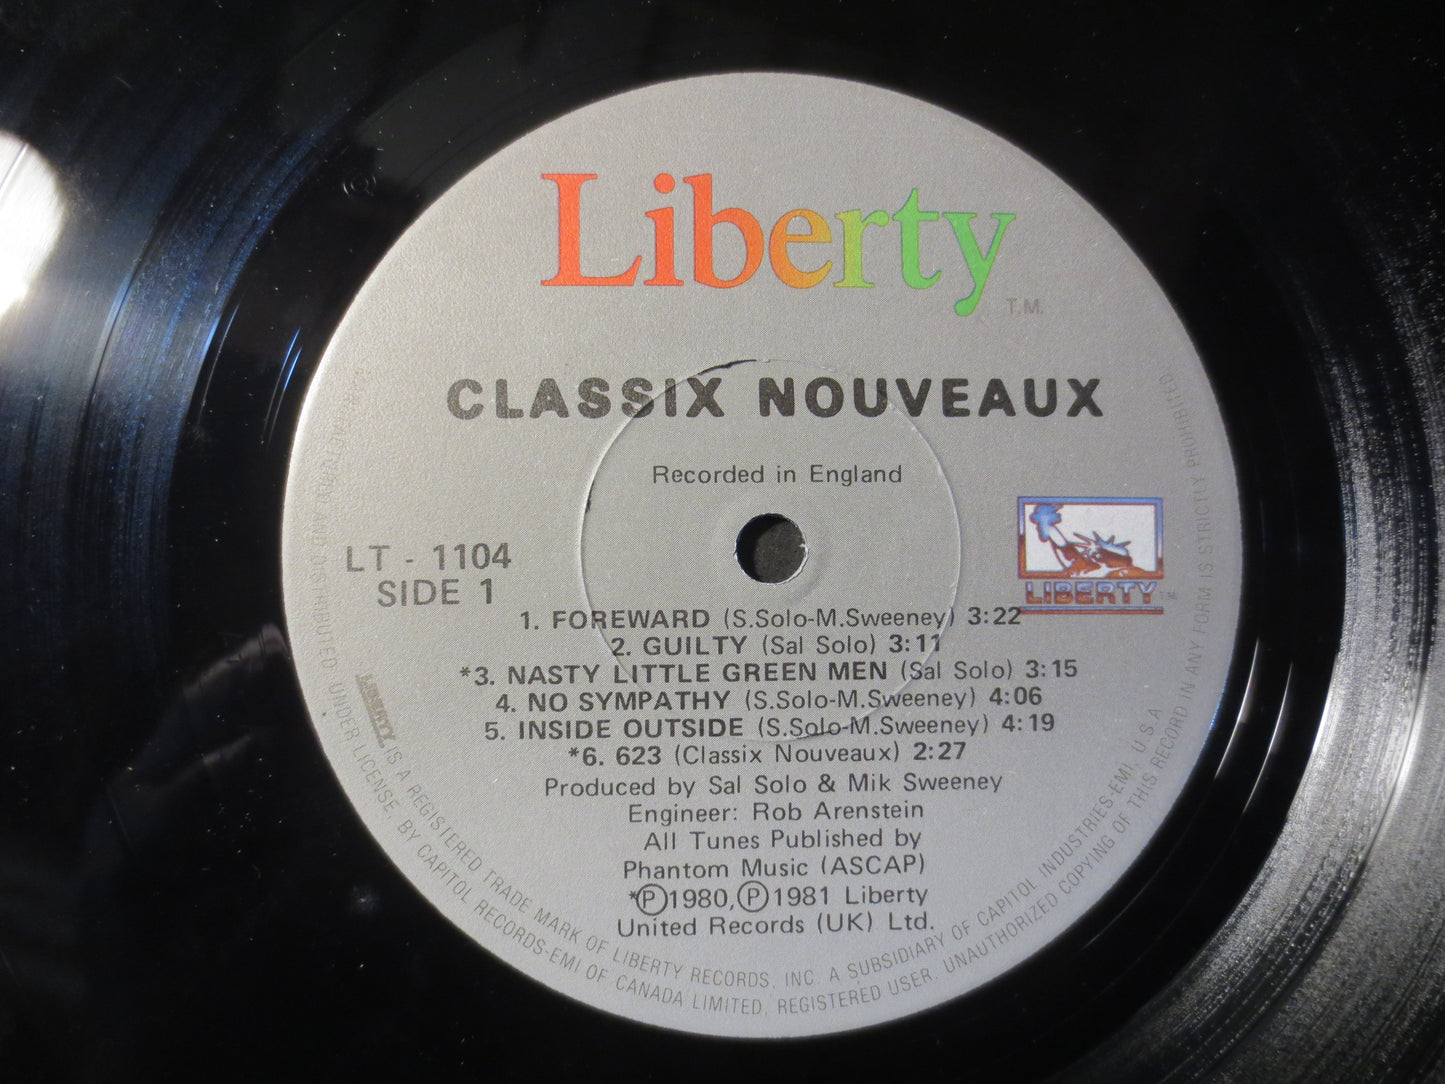 CLASSIX NOUVEAUX, Rock Record, Pop Record, Vinyl Record, Record Vinyl, Vinyl Album, 1981 Records, Records, Vinyl Records